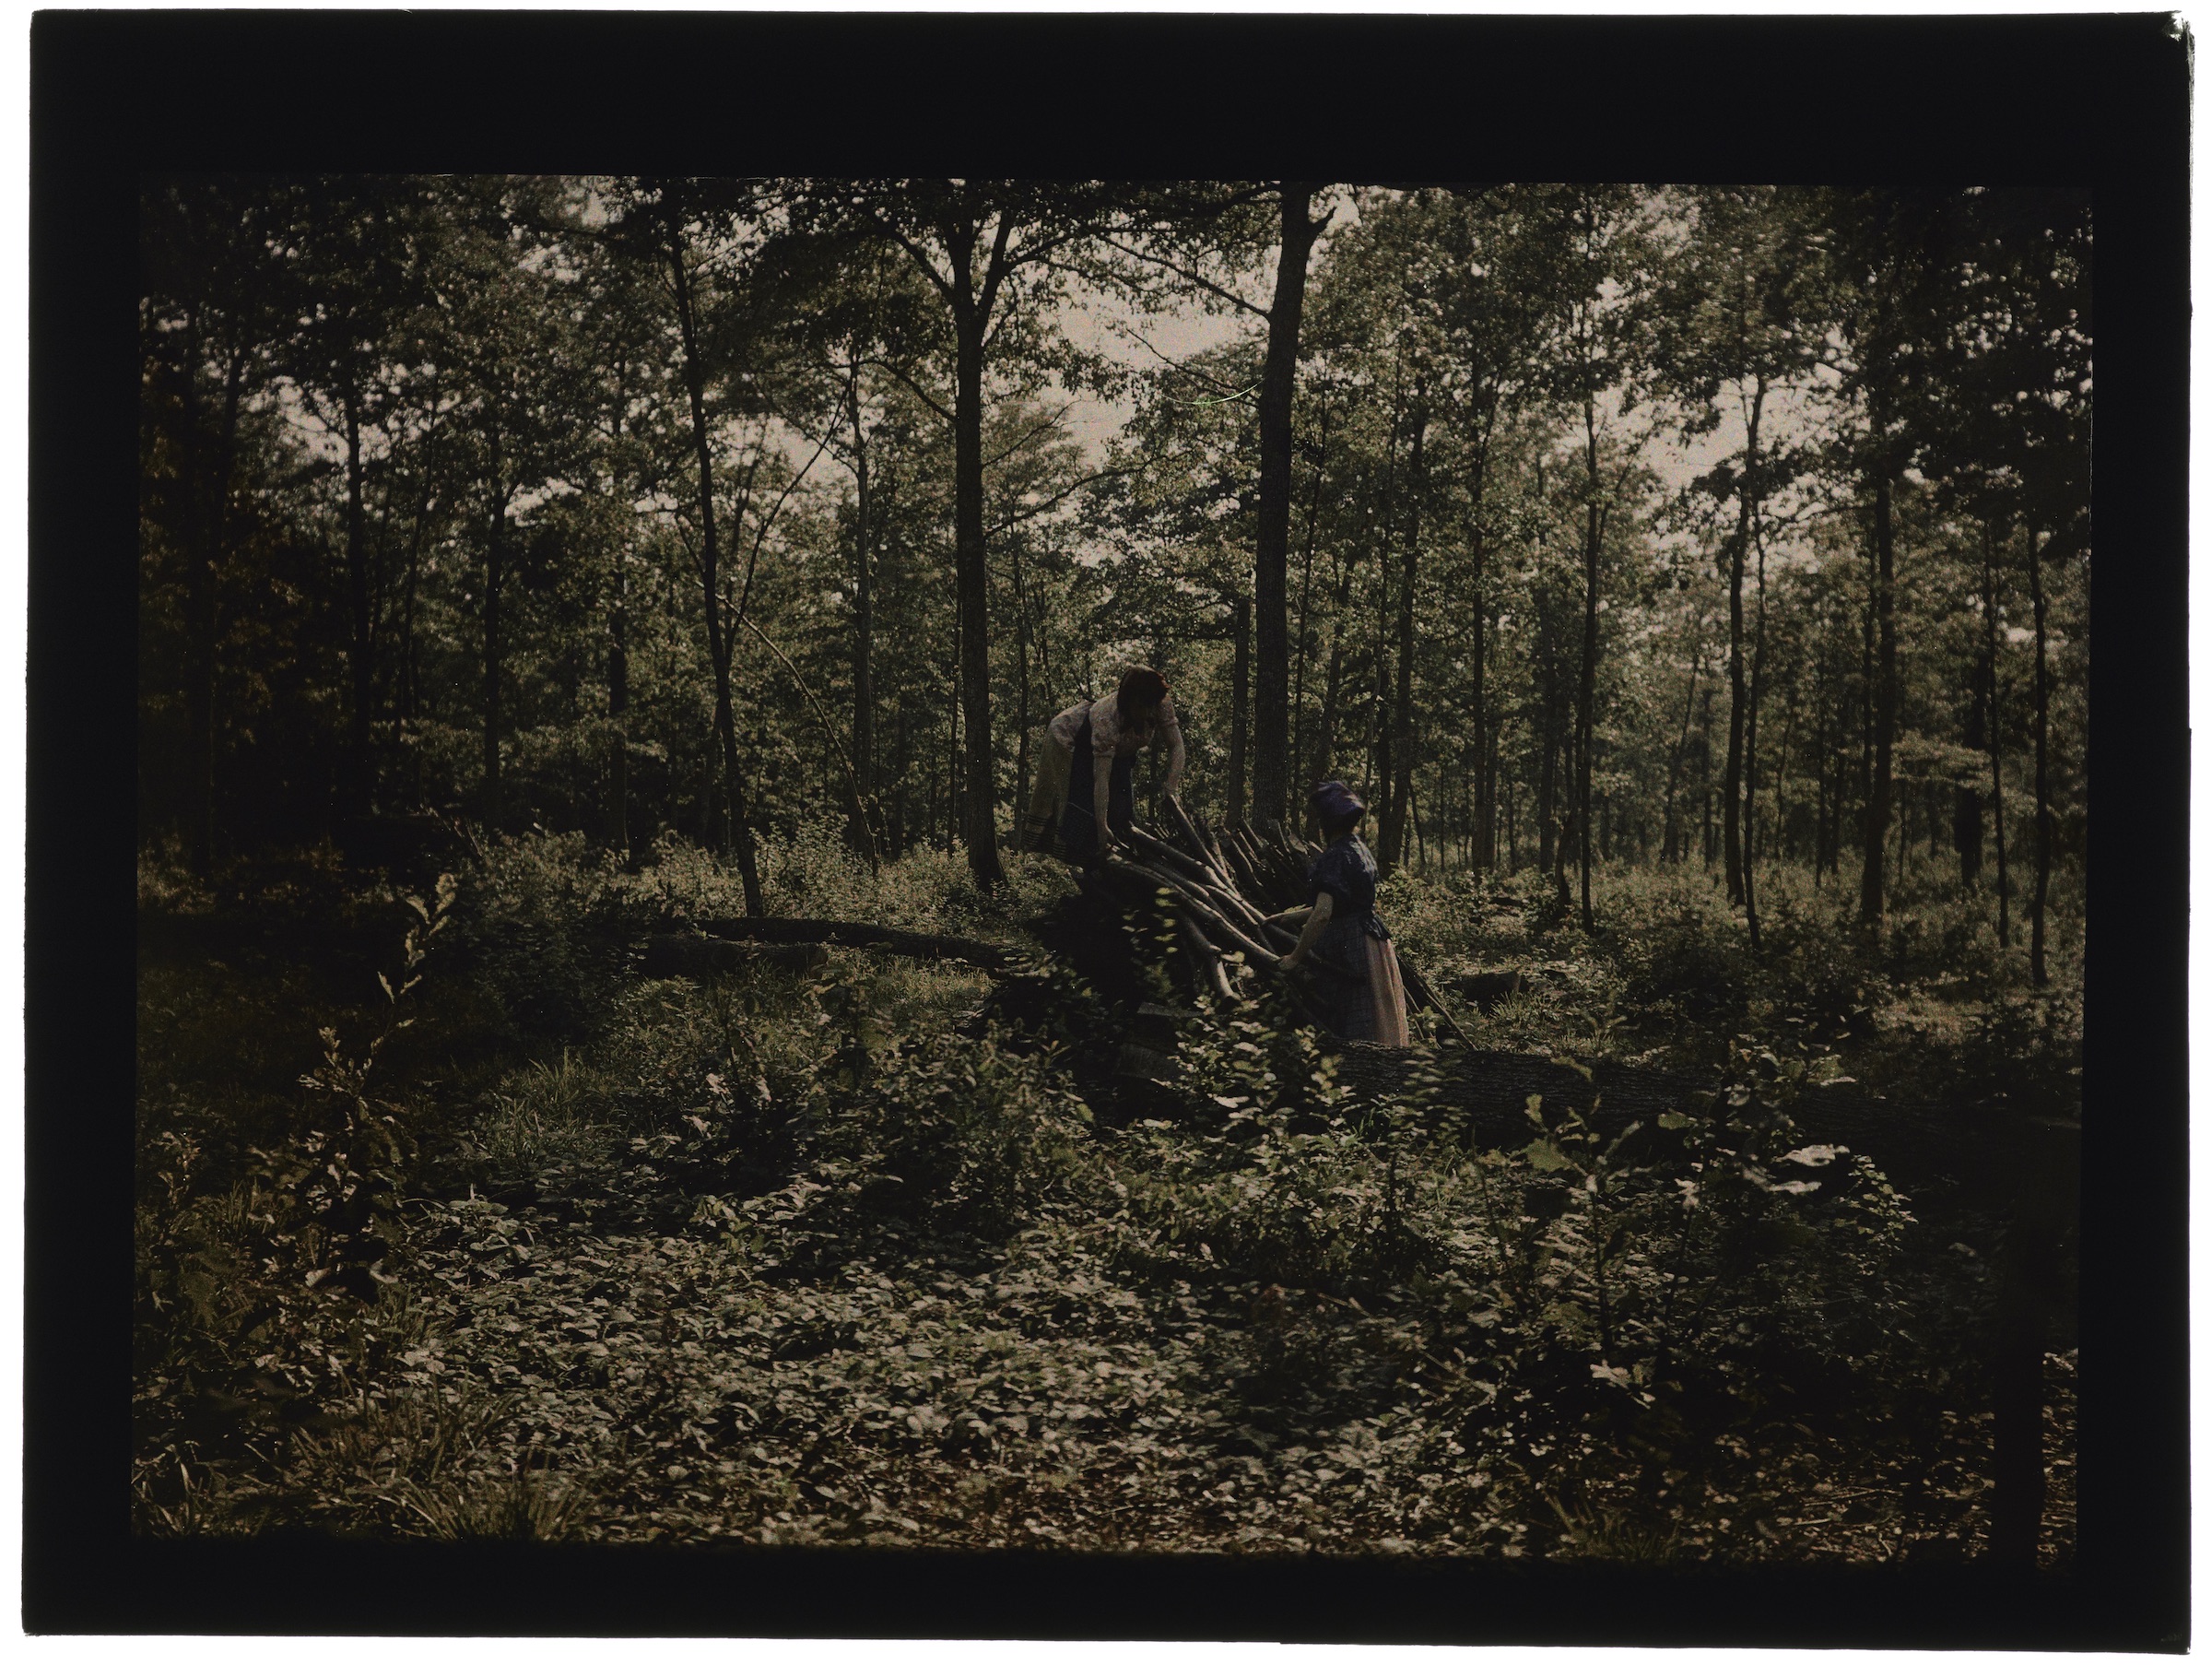 Deux femmes paysannes en forêt, pique-nique sur un tronc d'arbre